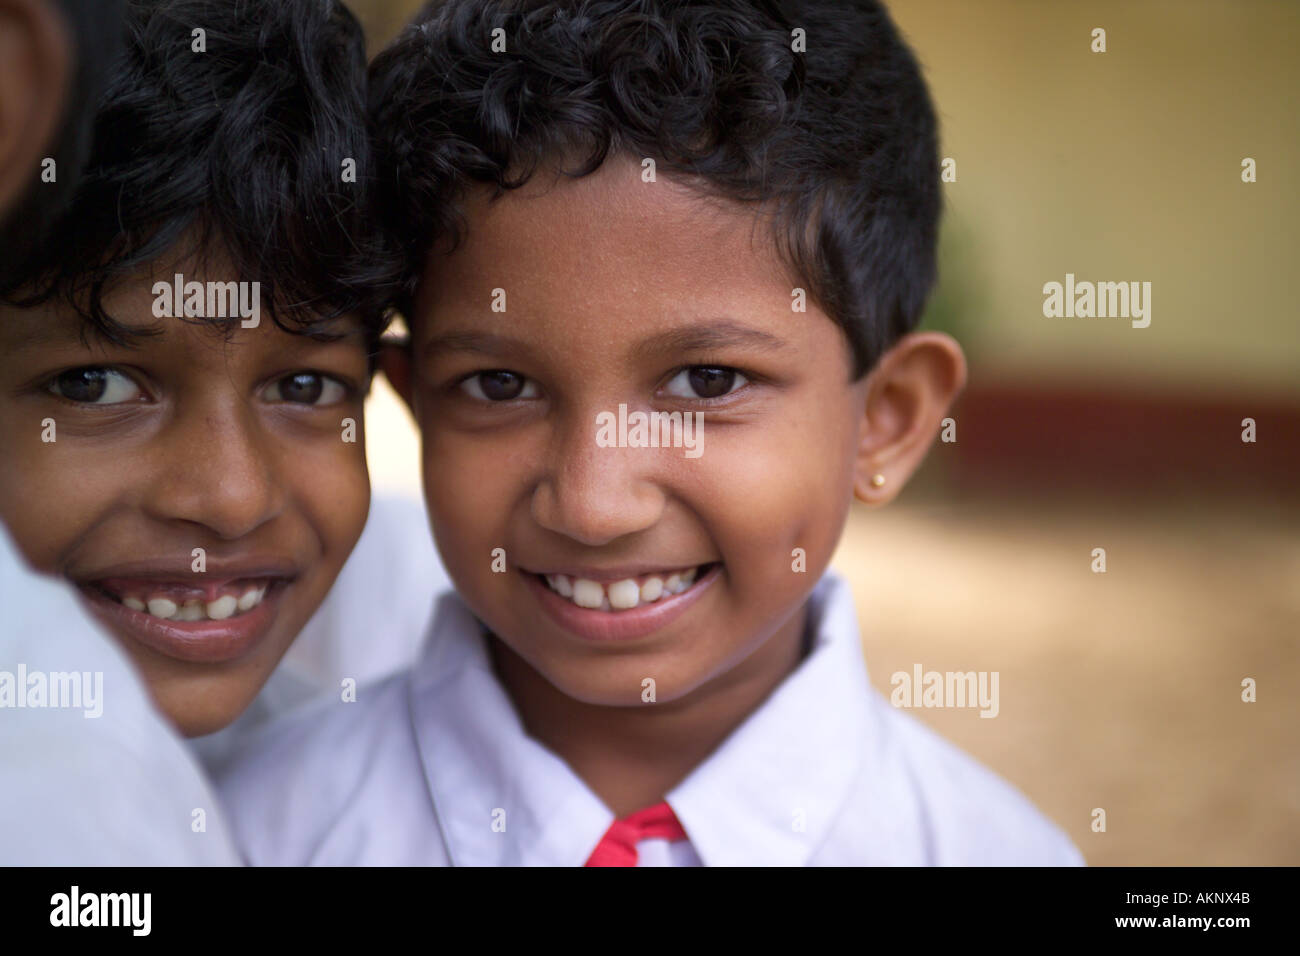 Studentesse a scuola colpite da Tsunami in Sri Lanka, Asia Foto Stock